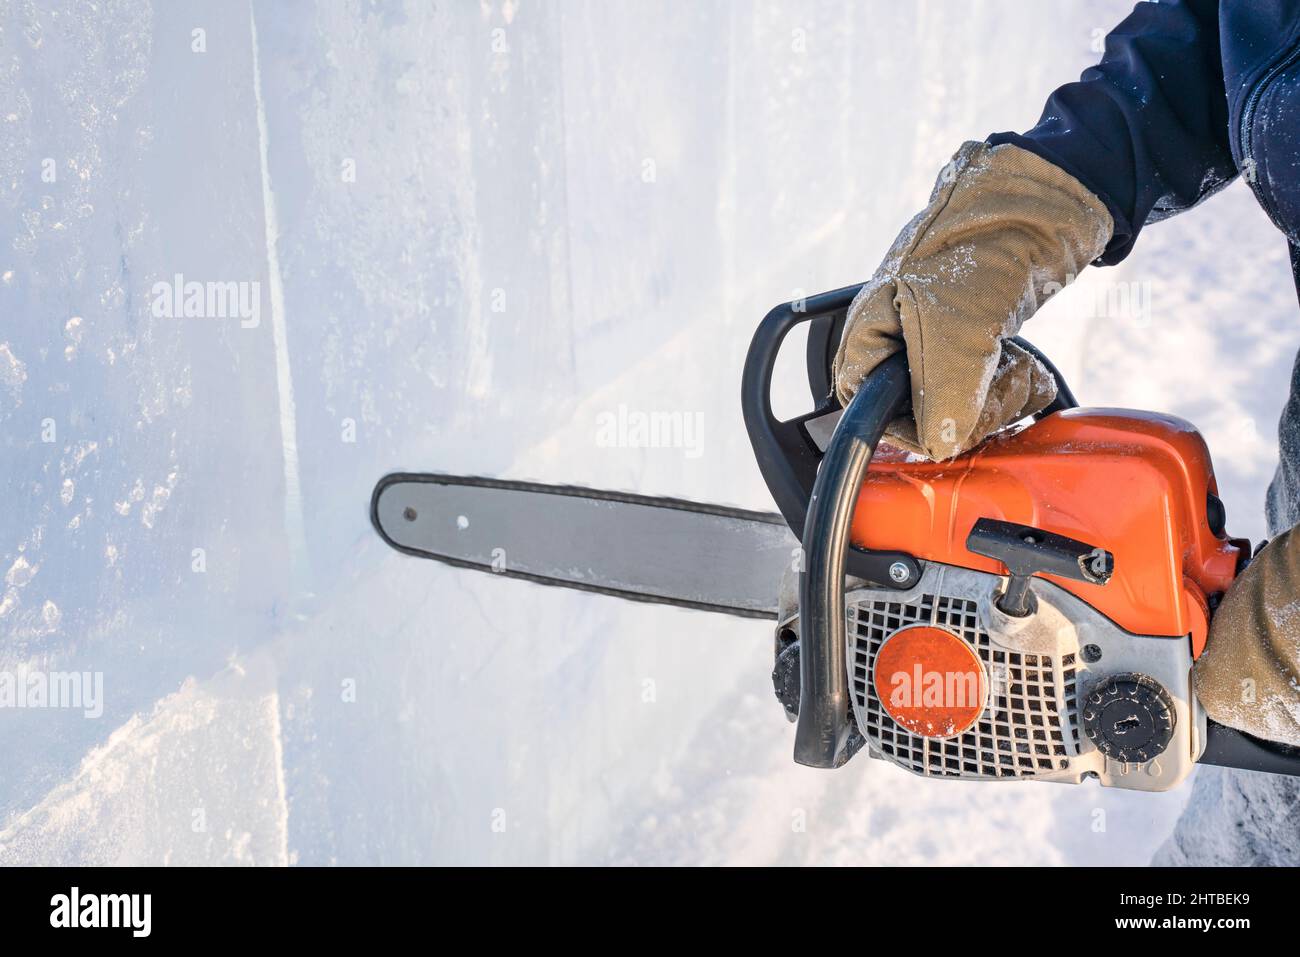 Realizzare sculture di ghiaccio. Un uomo taglia la superficie in un blocco di ghiaccio con una sega a benzina sul lago Baikal. Foto Stock